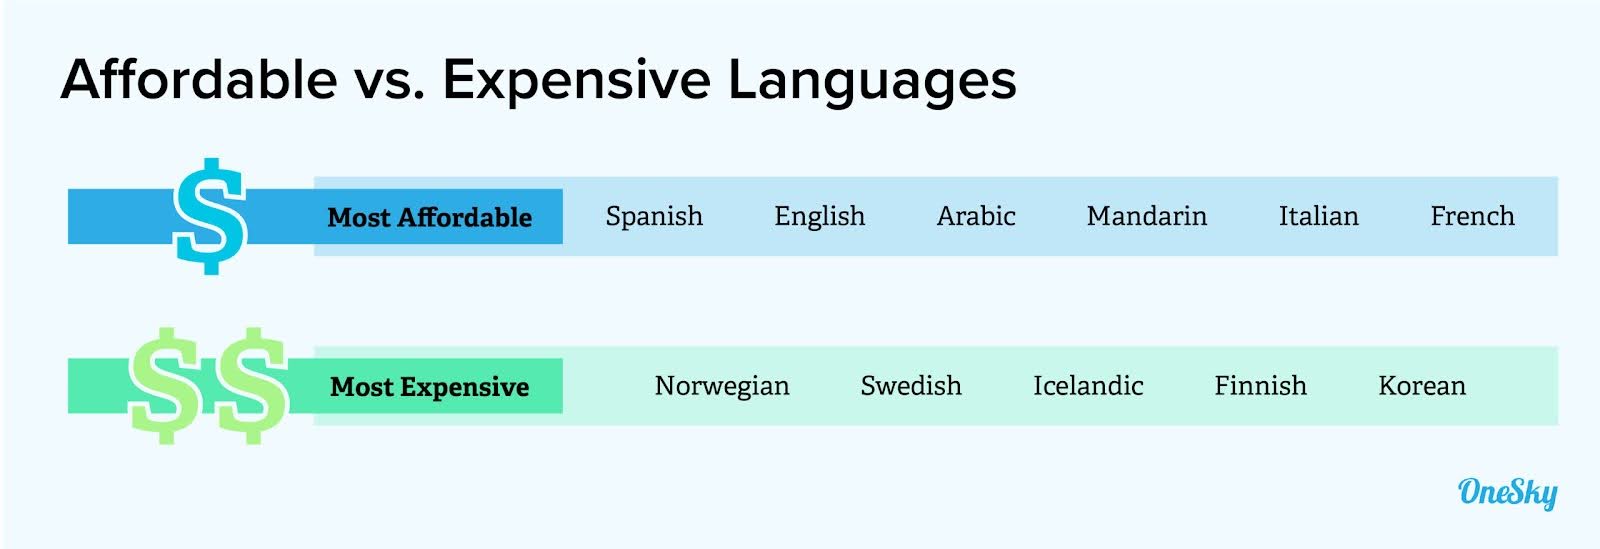 affordable vs expensive languages for translation